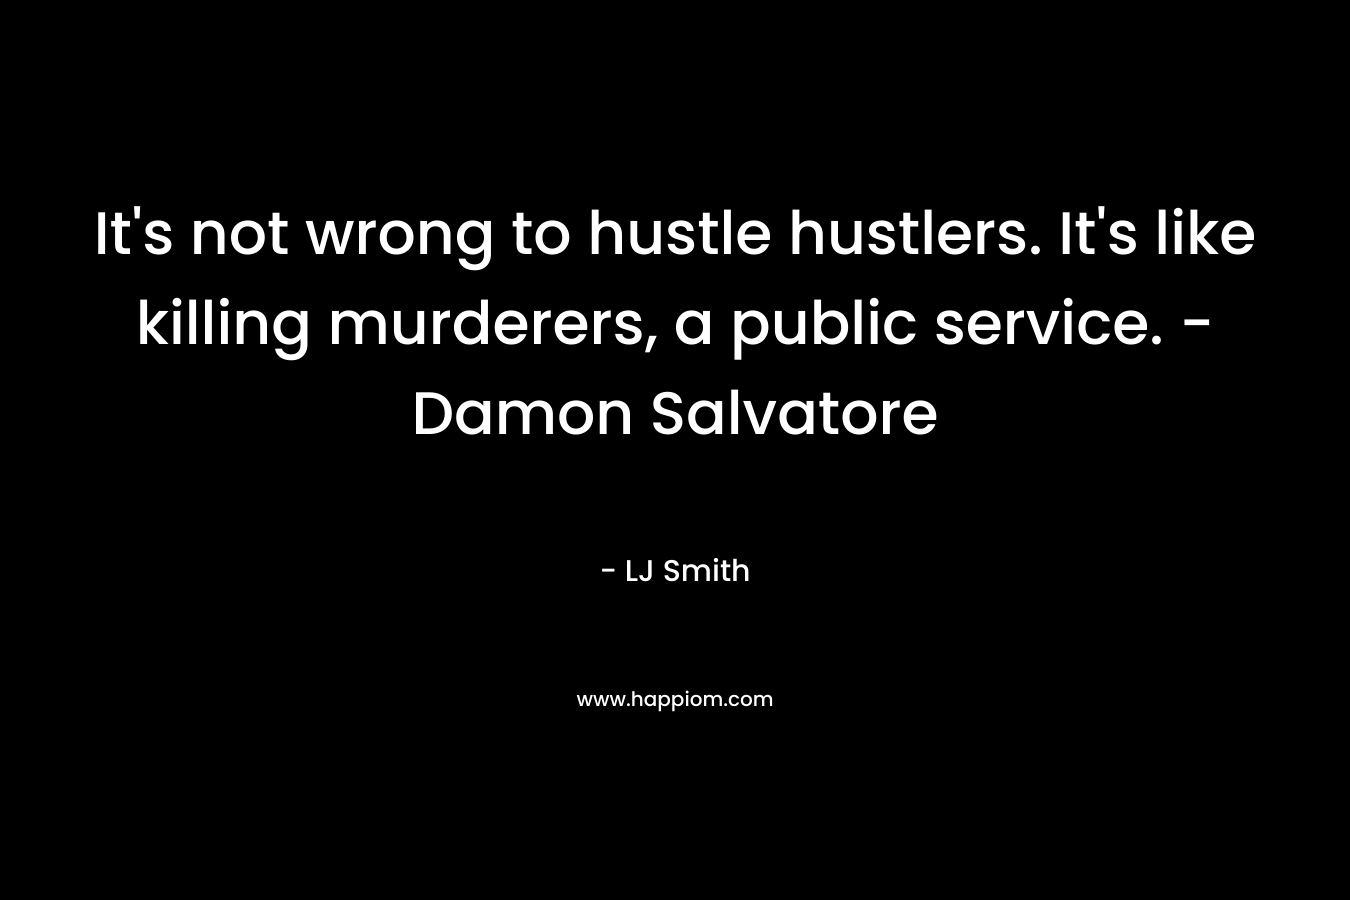 It's not wrong to hustle hustlers. It's like killing murderers, a public service. -Damon Salvatore